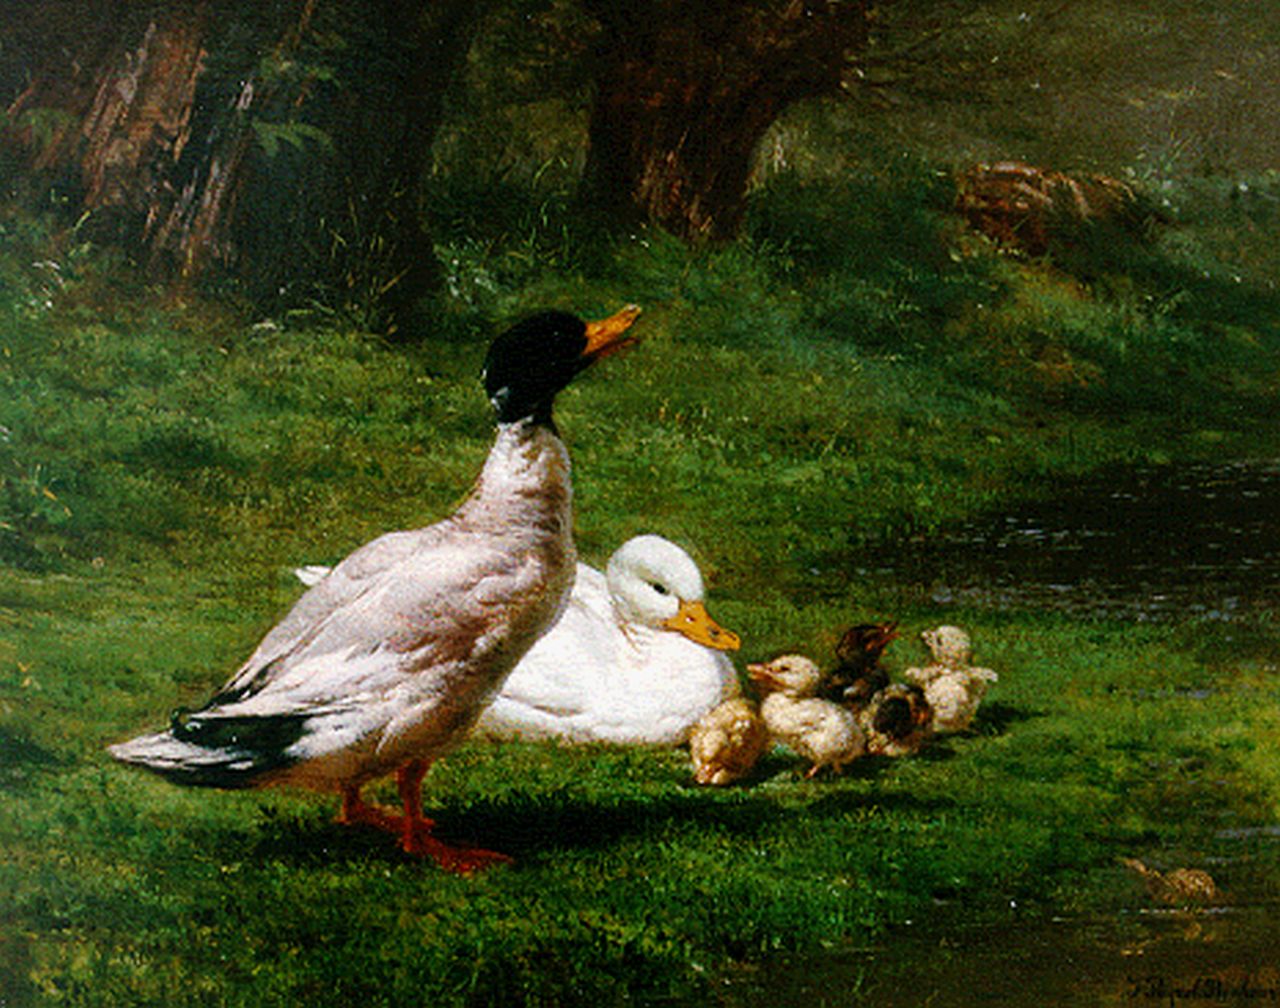 Peyrol-Bonheur J.  | Juliette Peyrol-Bonheur, Eenden met jongen aan de rivieroever, olieverf op doek 32,5 x 40,7 cm, gesigneerd rechtsonder en gedateerd 1859